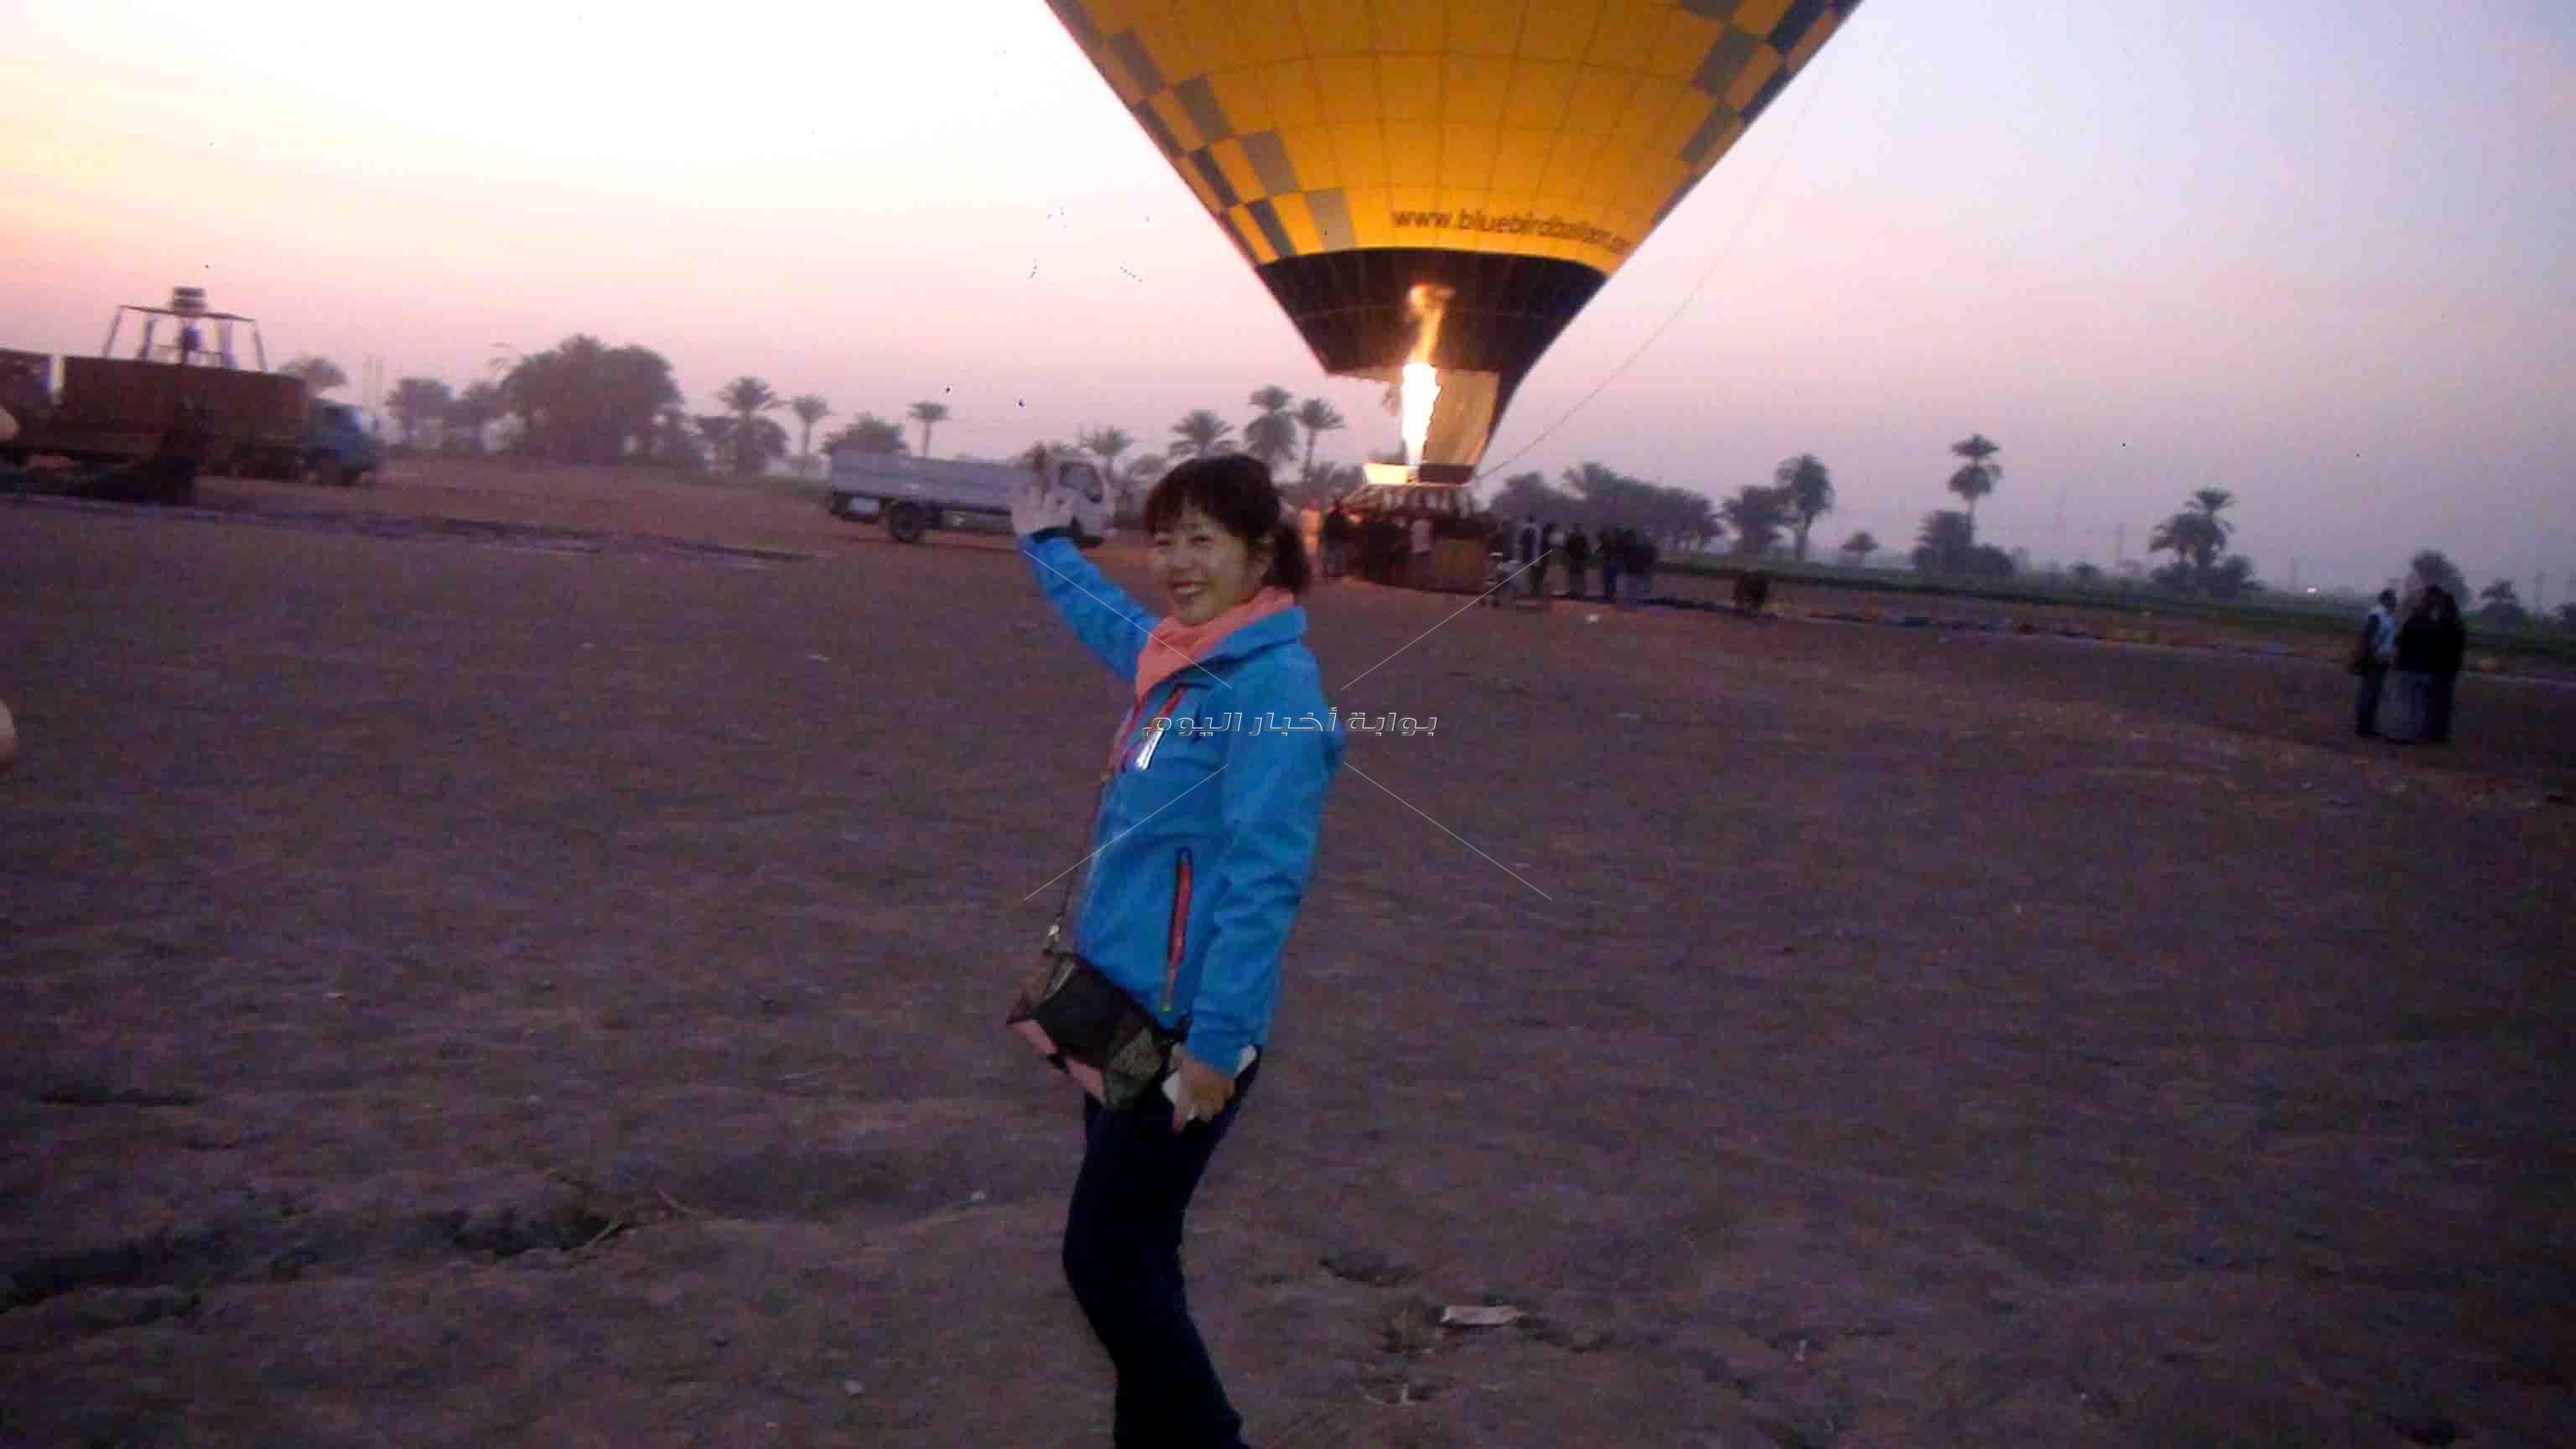 الأقصر تتفرد بين كل المقاصد السياحية المصرية بوجود البالون الطائر فى سمائها